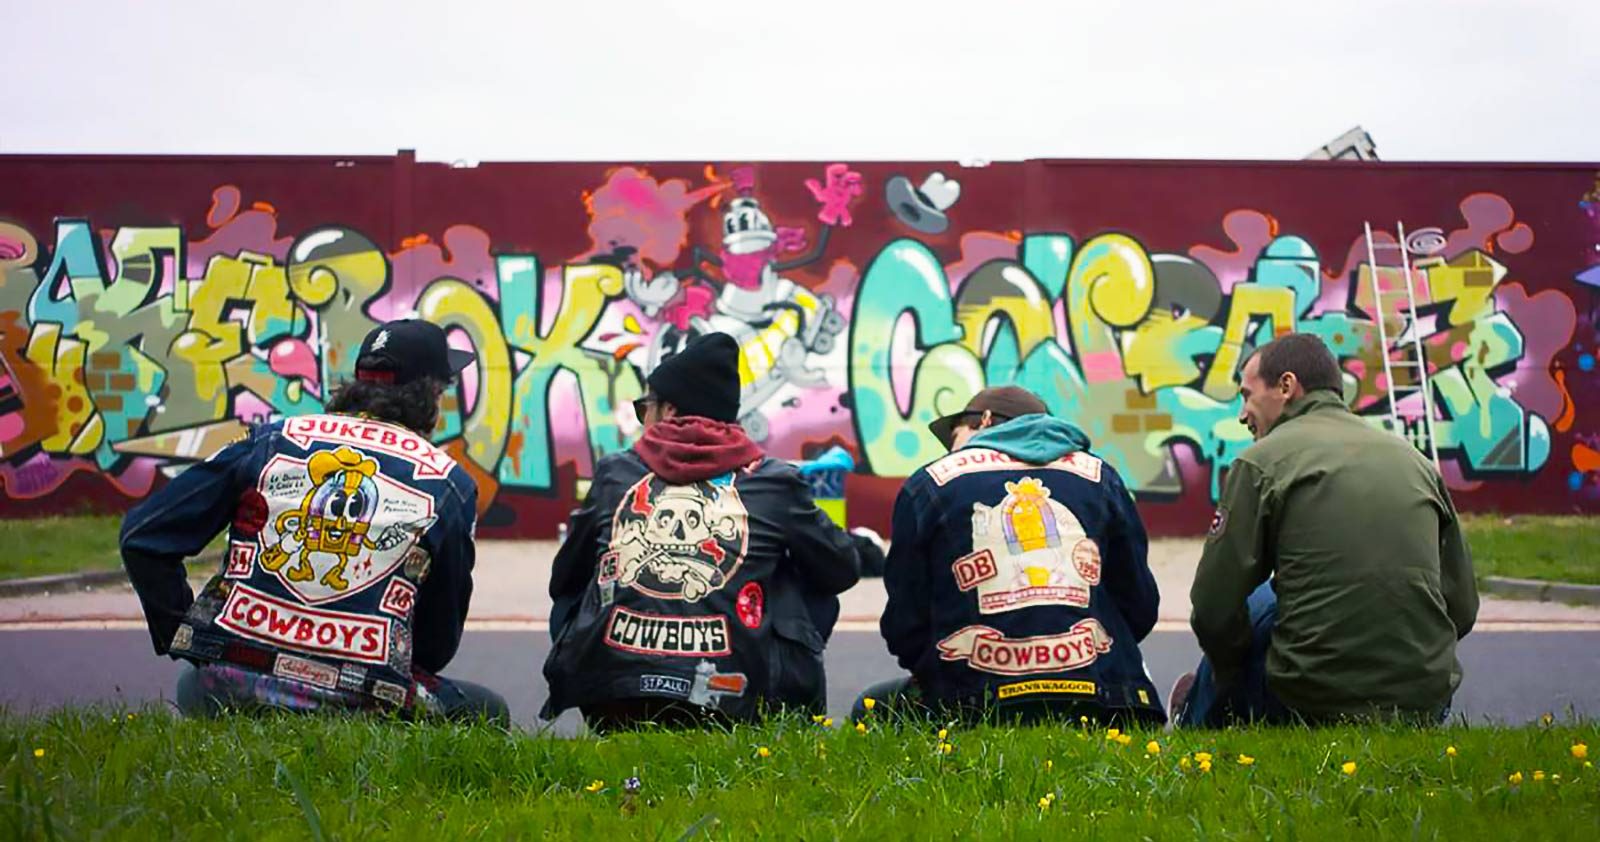 Le retour des vestes en jean customisées? 30 photos de vestes graffiti